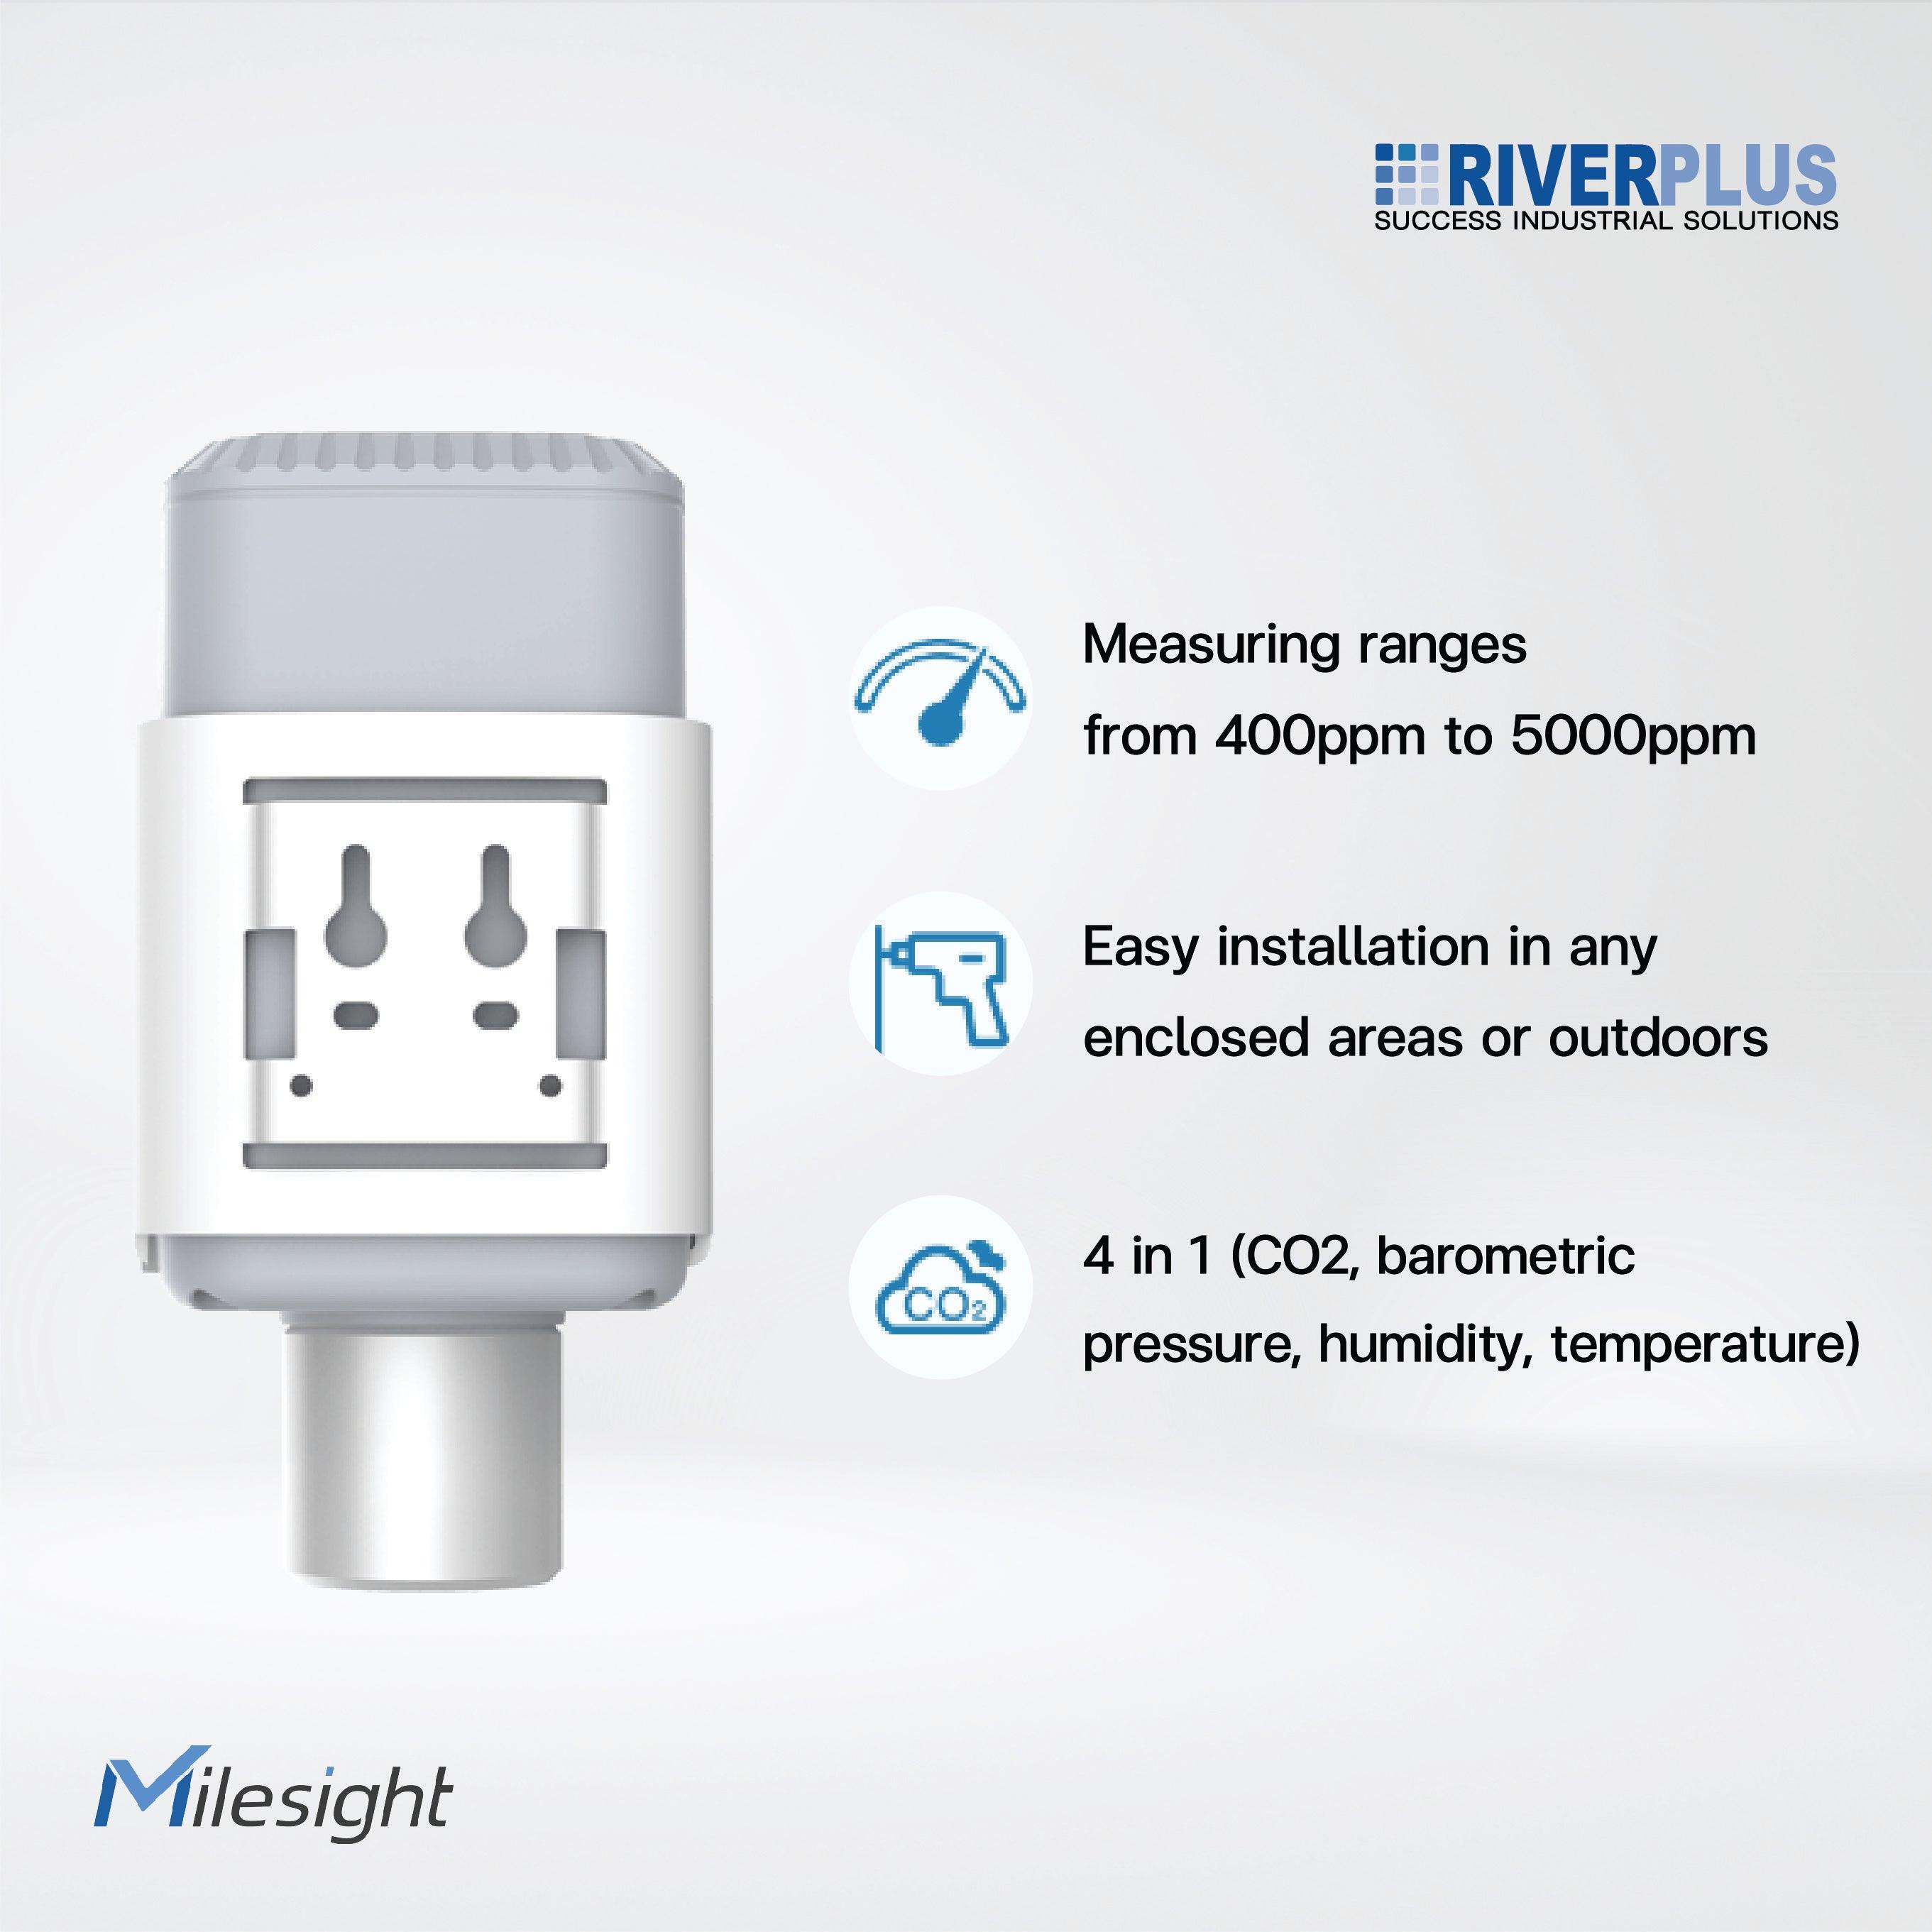 EM500-CO2 Carbon Dioxide Sensor (4 in 1) - Riverplus